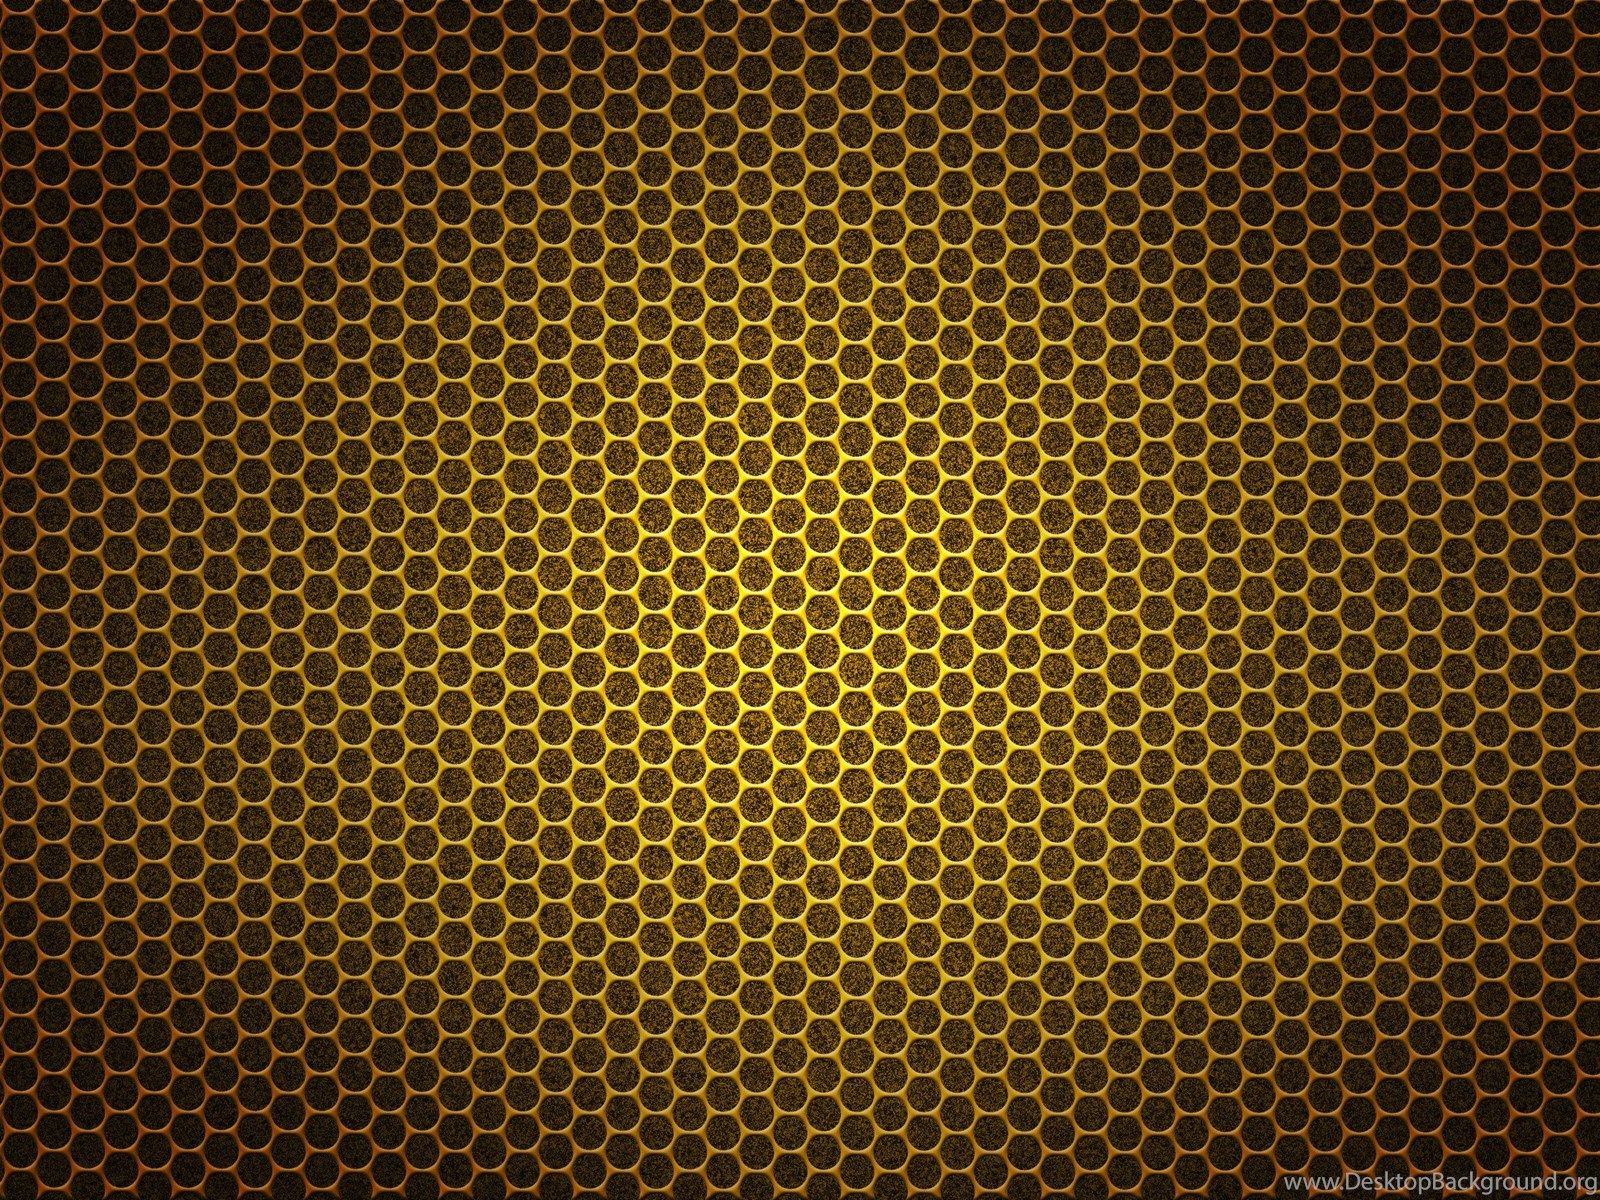 HD Golden Gold Texture Wallpaper High Resolution Full Size